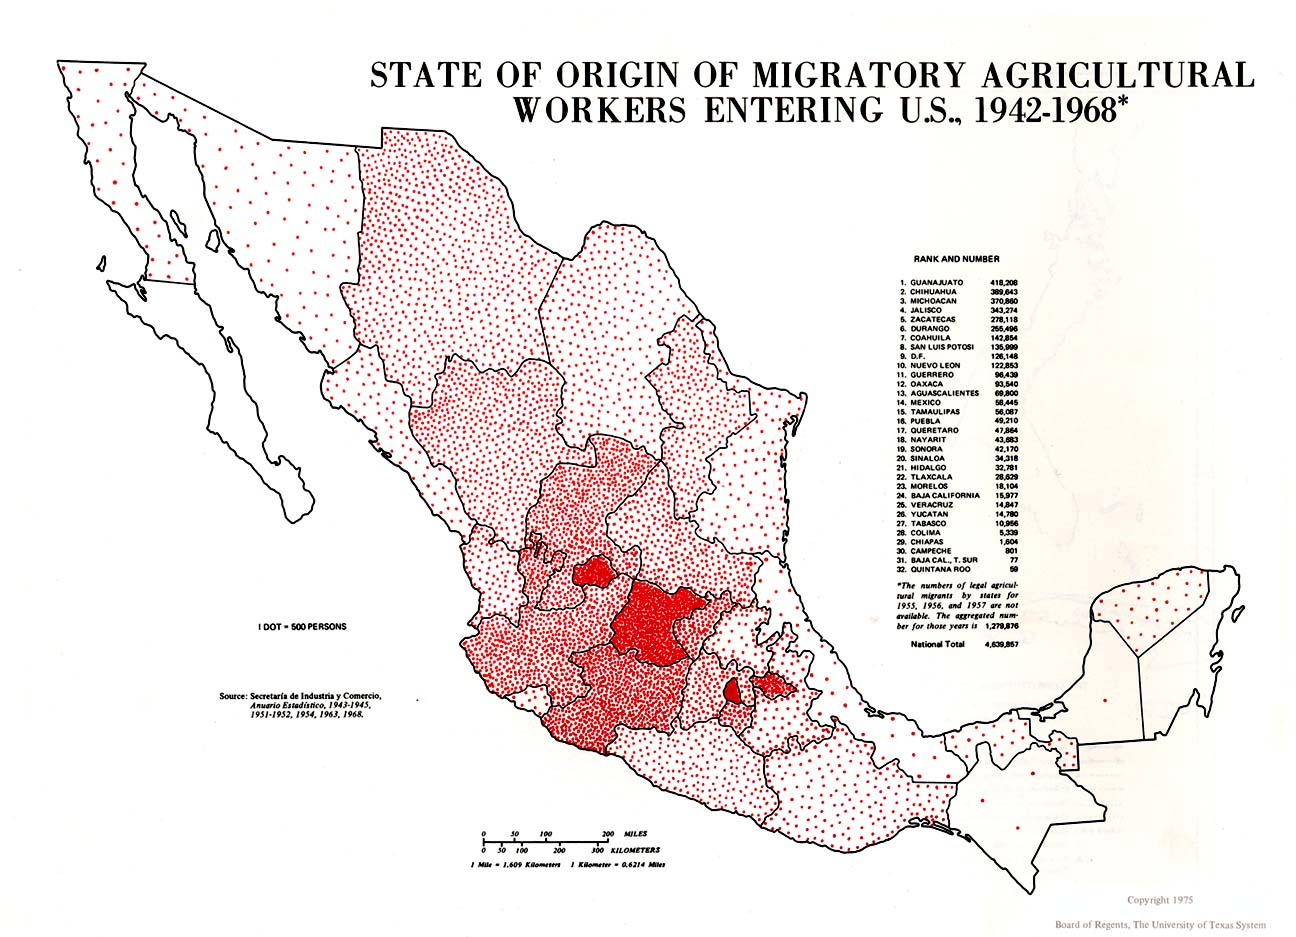 Mapa de los Trabajadores Agrícolas Migratorios Entrando en EE.UU. Segun el Estado de Origen, México 1942 - 1968